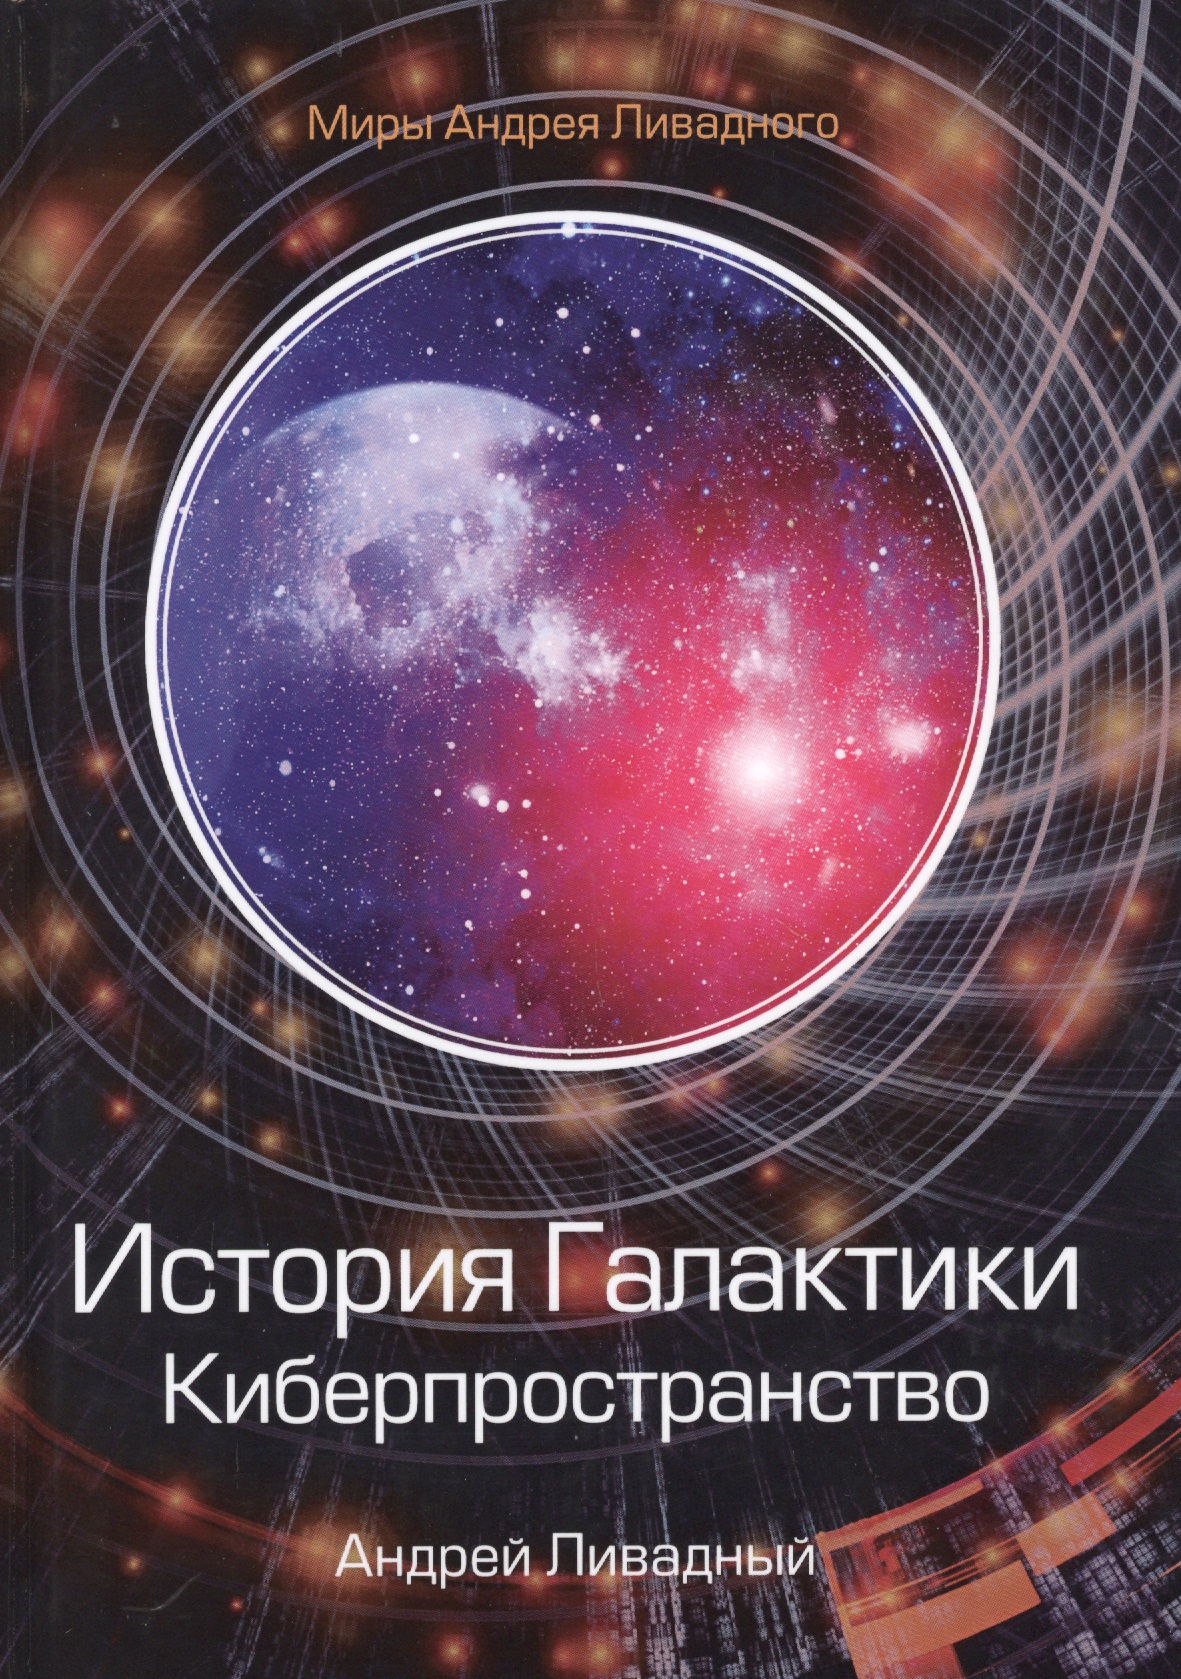 Ливадный Андрей Львович - История Галактики. Киберпространство